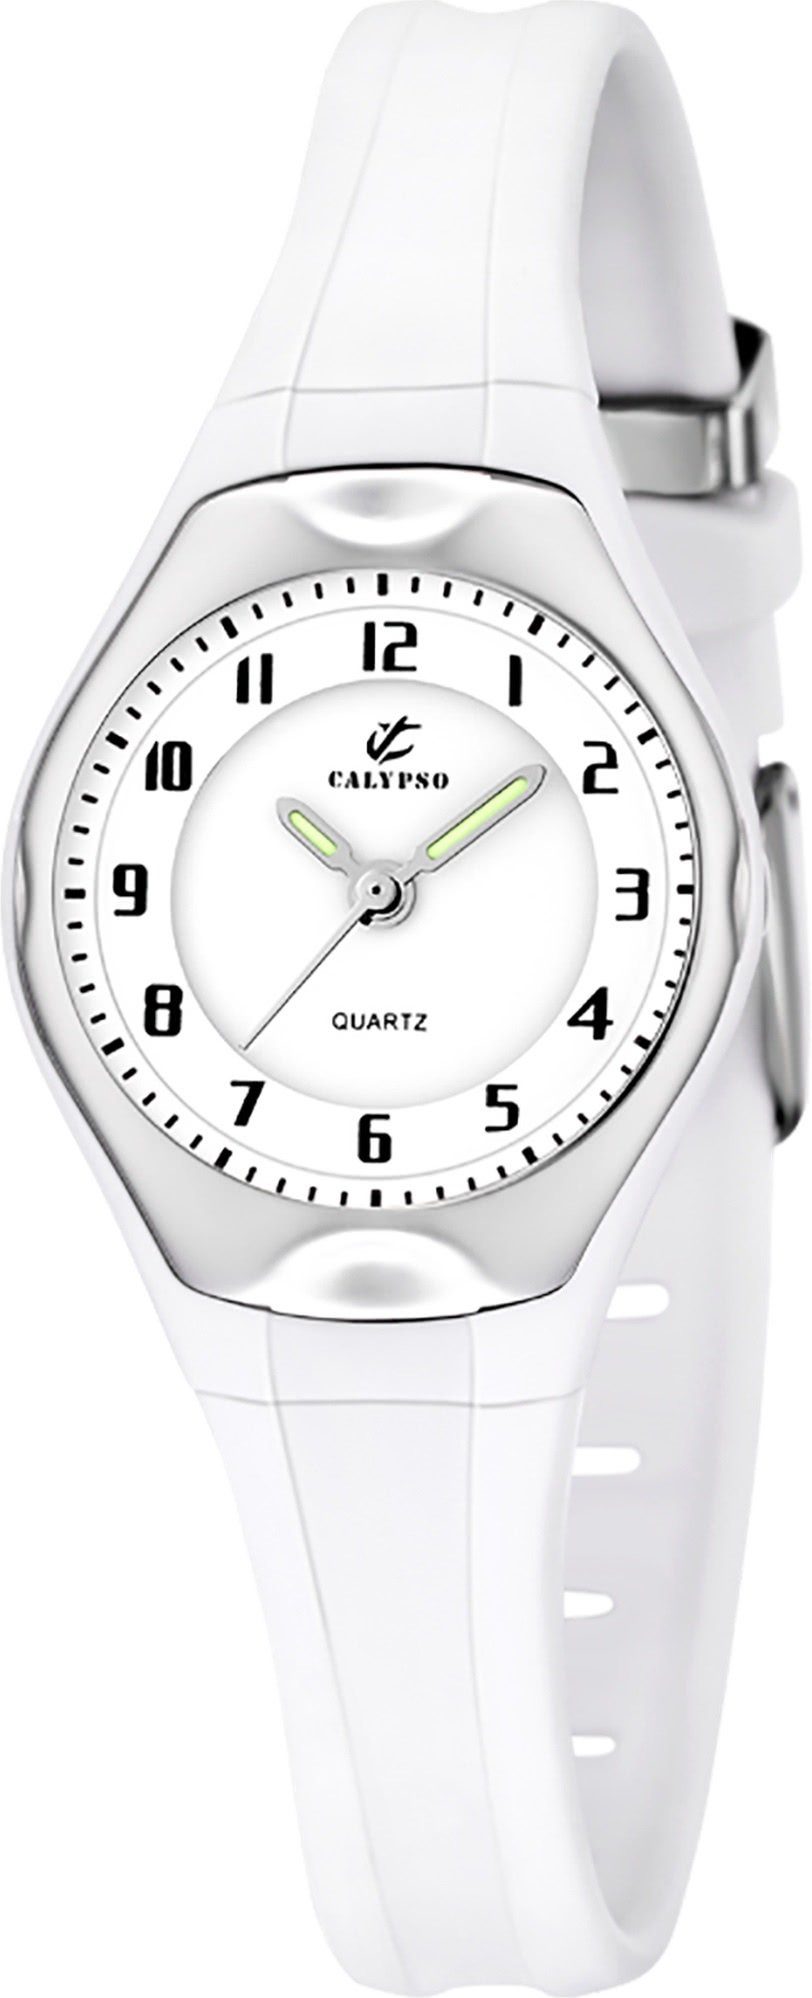 CALYPSO WATCHES Quarzuhr Calypso Kinder Uhr K5163/H Kunststoffband, Kinder  Armbanduhr rund, Kautschukarmband weiß, Casual | Quarzuhren